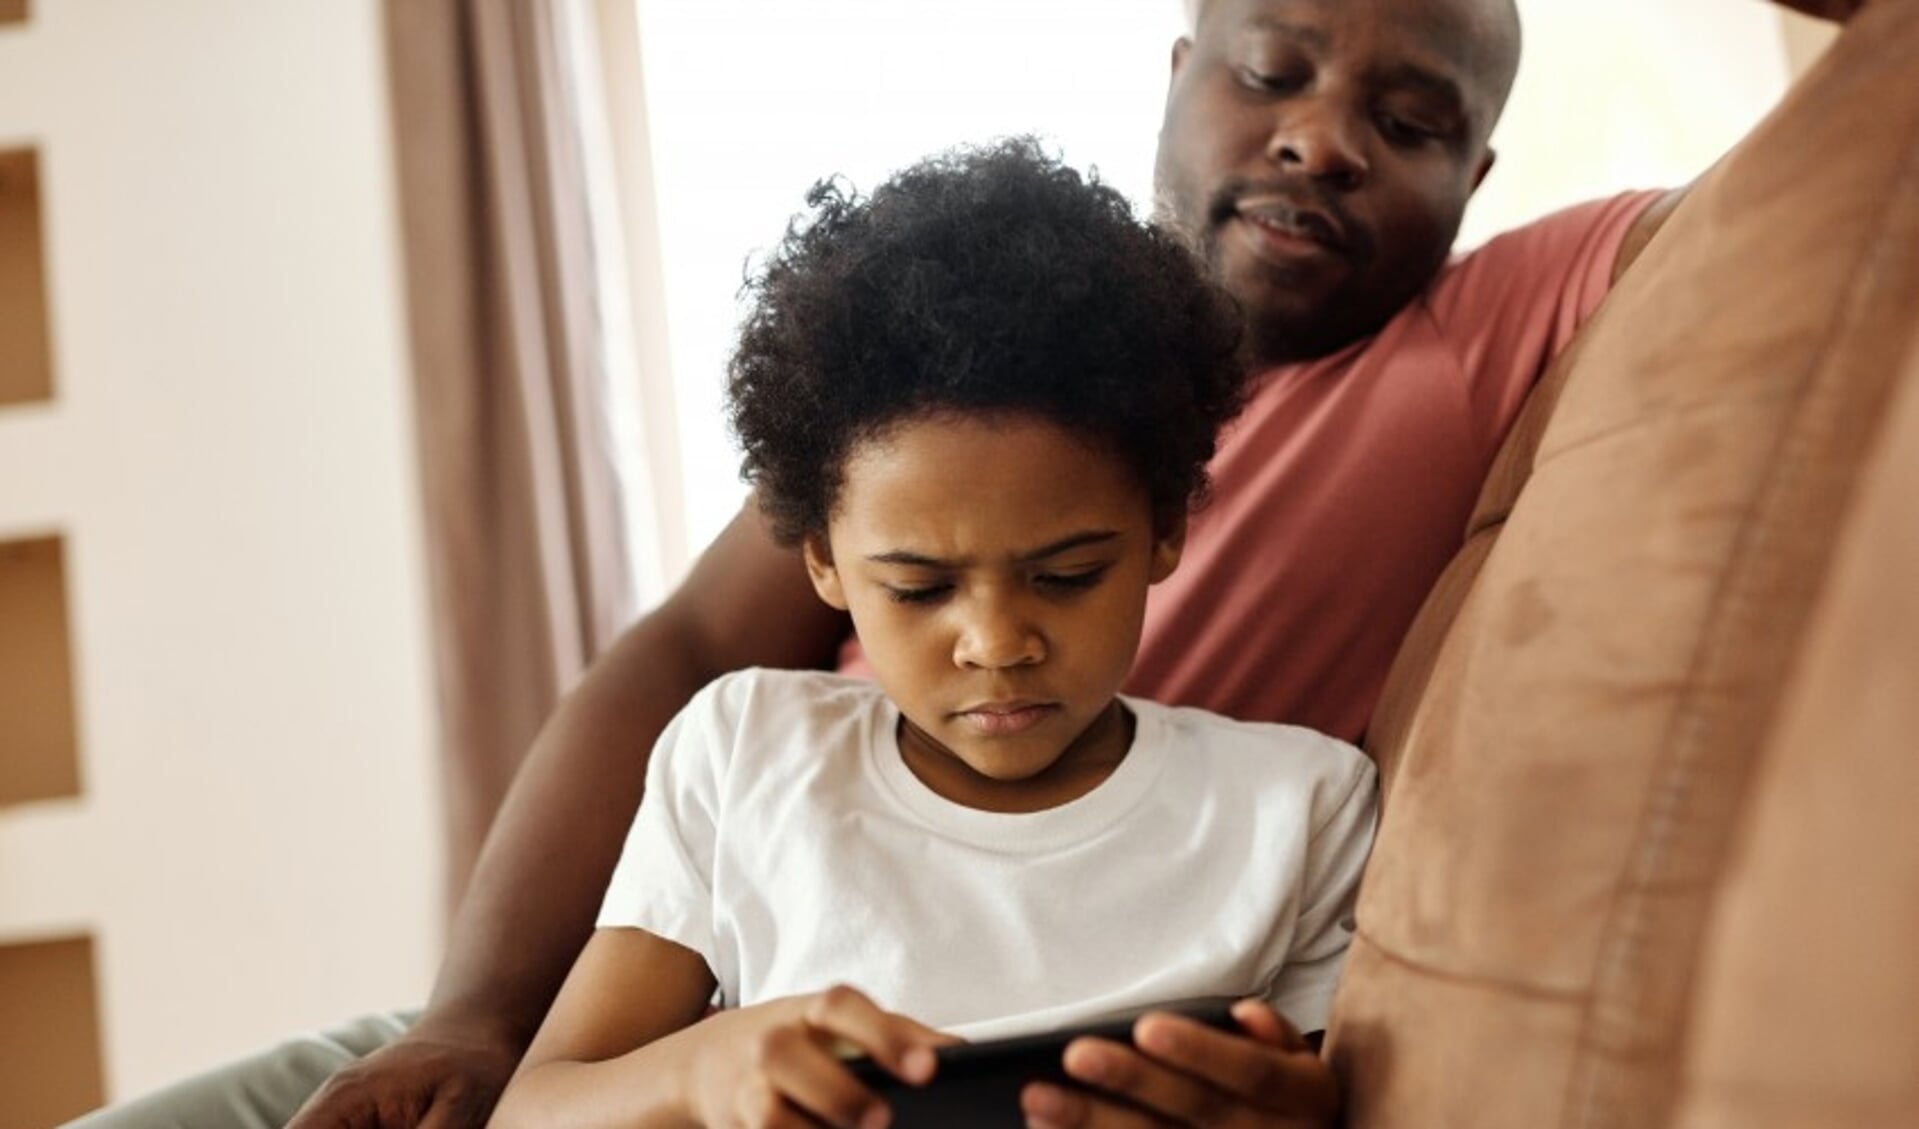 Ouders niet op één lijn bij digitaal mediagebruik kinderen